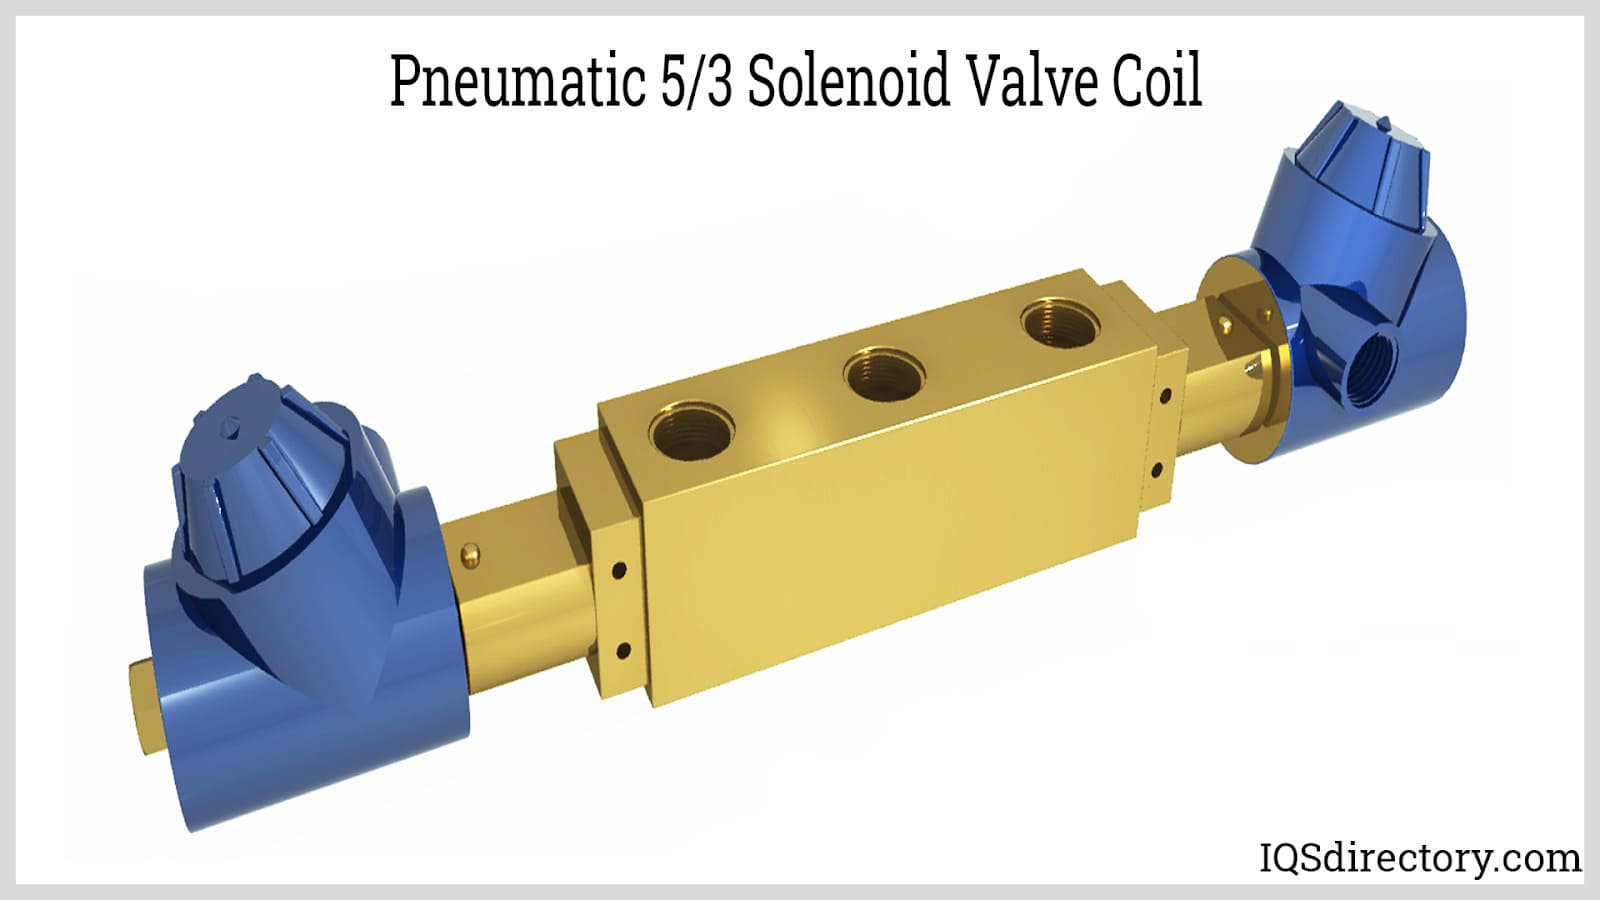 Pneumatic 5/3 Solenoid Valve Coil